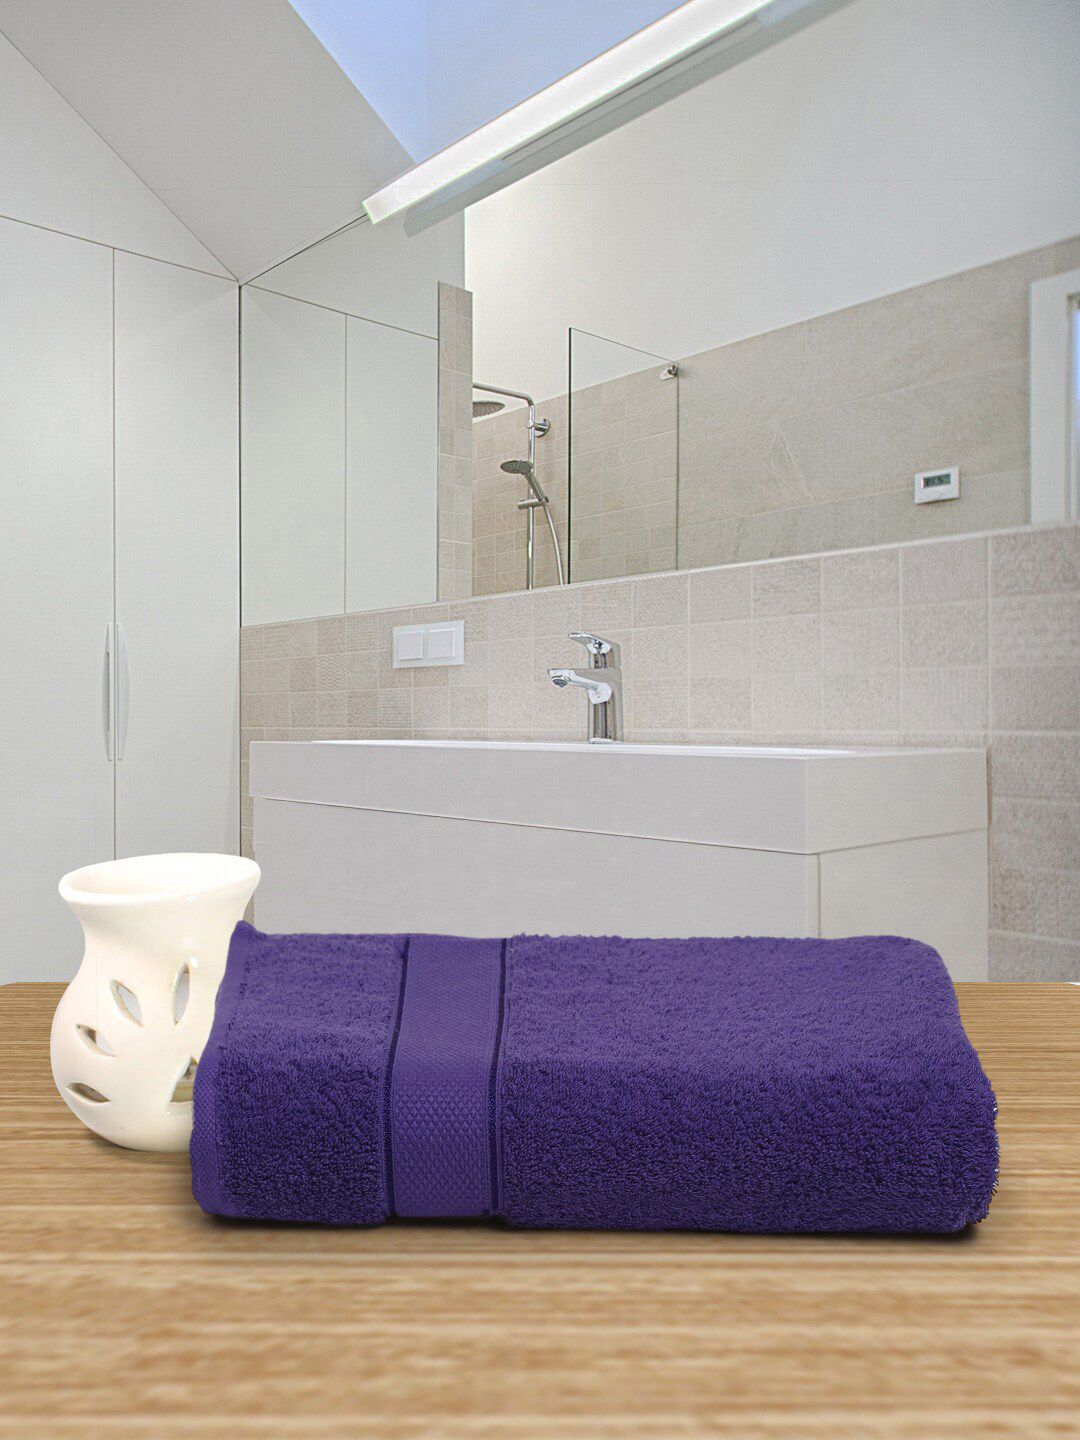 Creeva Violet Solid 525 GSM Cotton Bath Towel Price in India